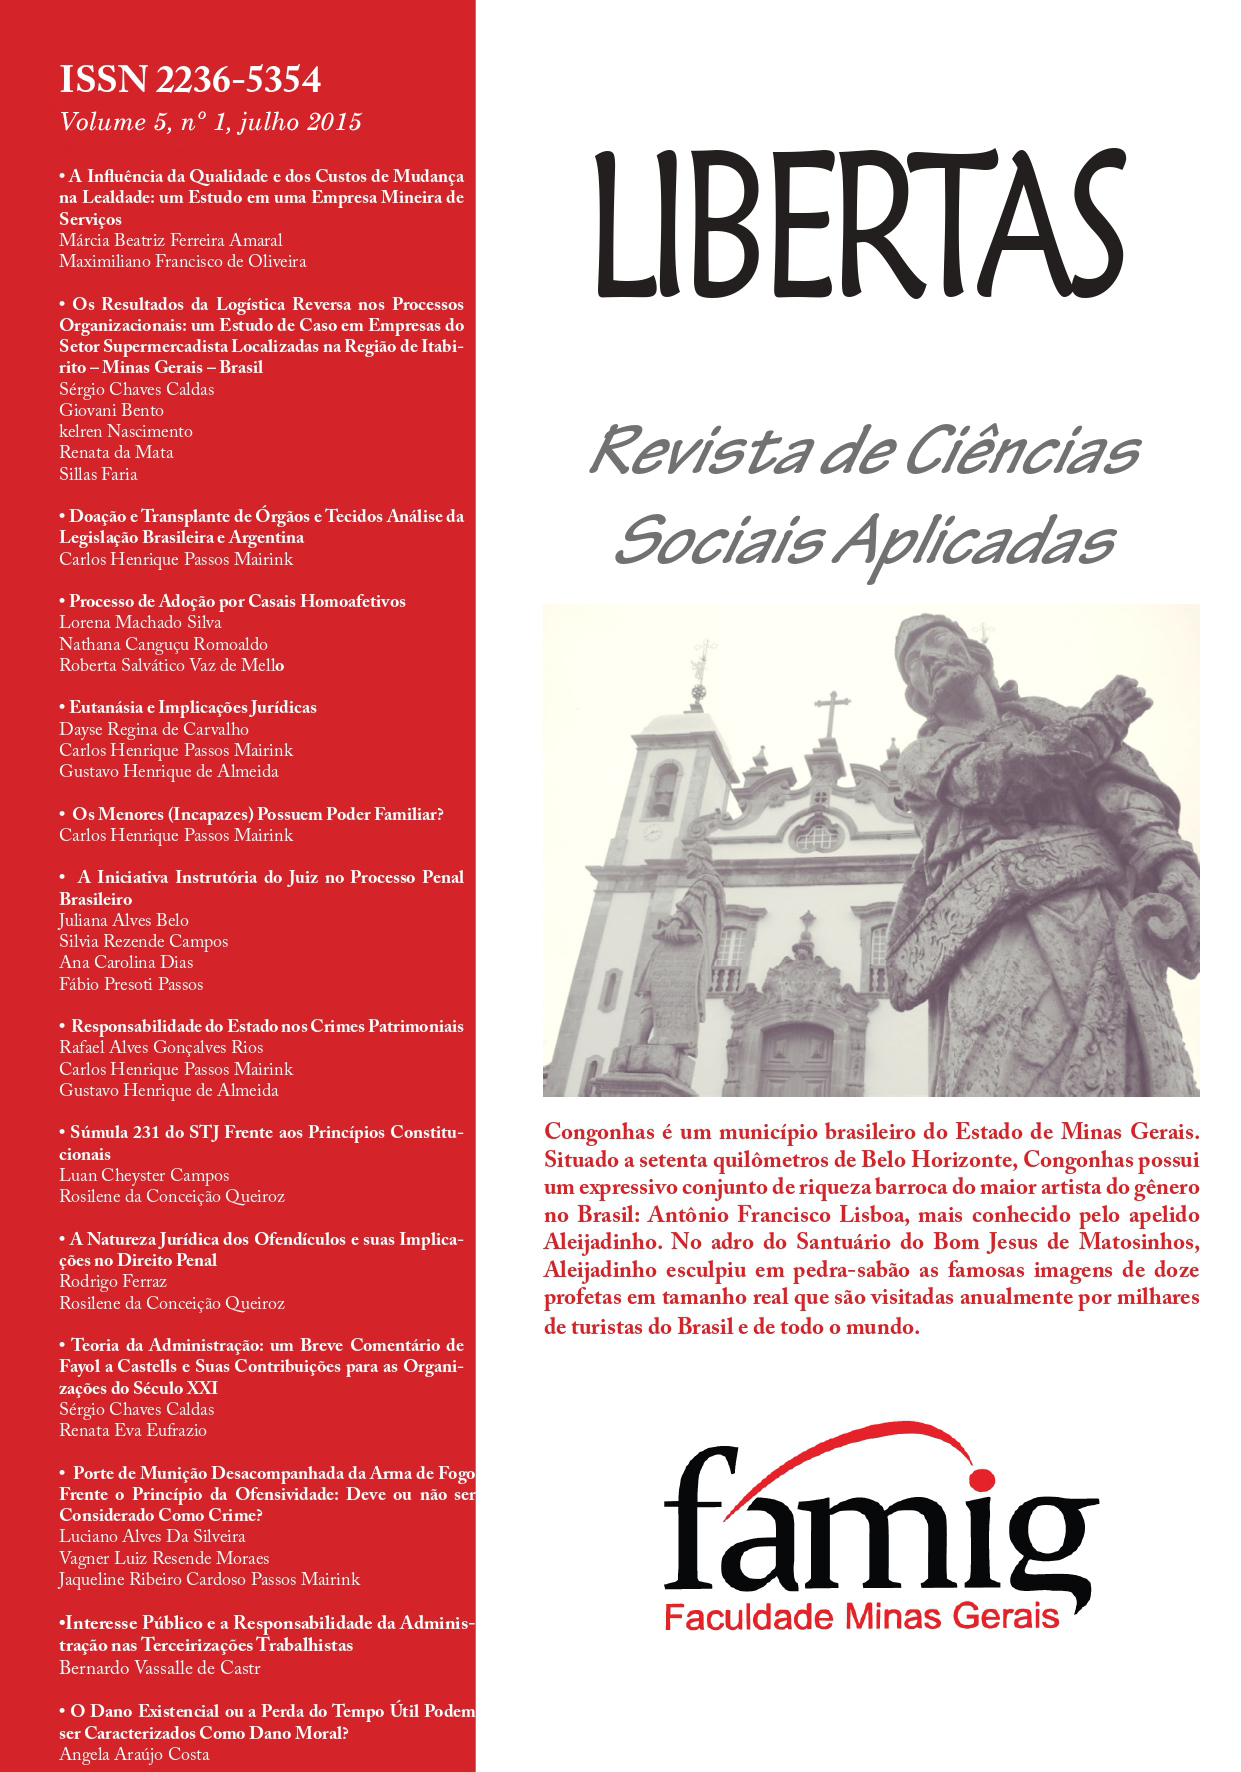 					Visualizar v. 5 n. 1 (2015): LIBERTAS: Revista de Ciências Sociais Aplicadas
				